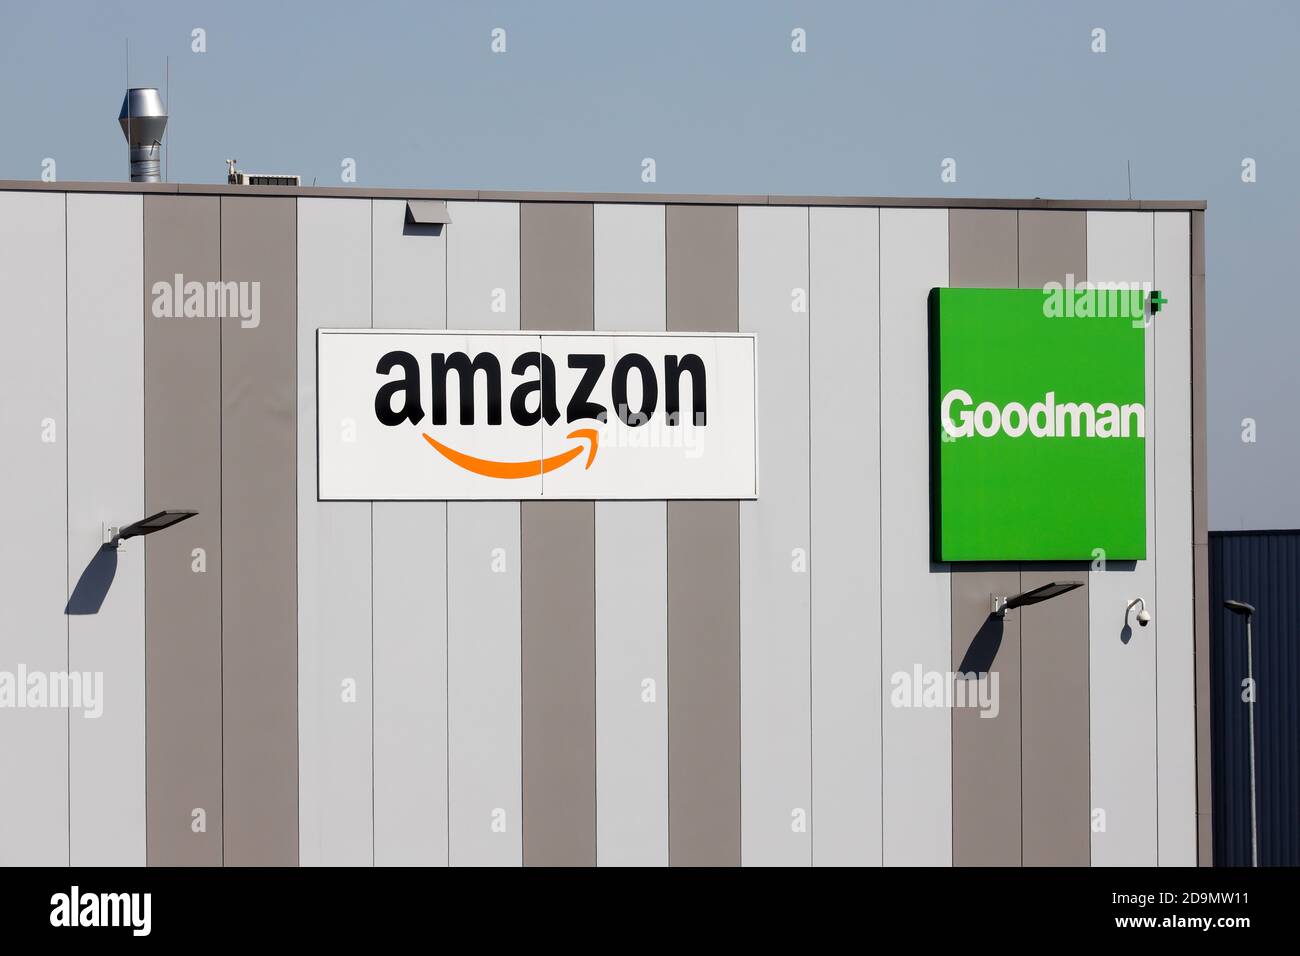 Amazon Logistikzentrum, Immobilienunternehmen Goodman vermietet Amazon das Logistikzentrum, Duisburg, Ruhrgebiet, Nordrhein-Westfalen, Deutschland. Stockfoto